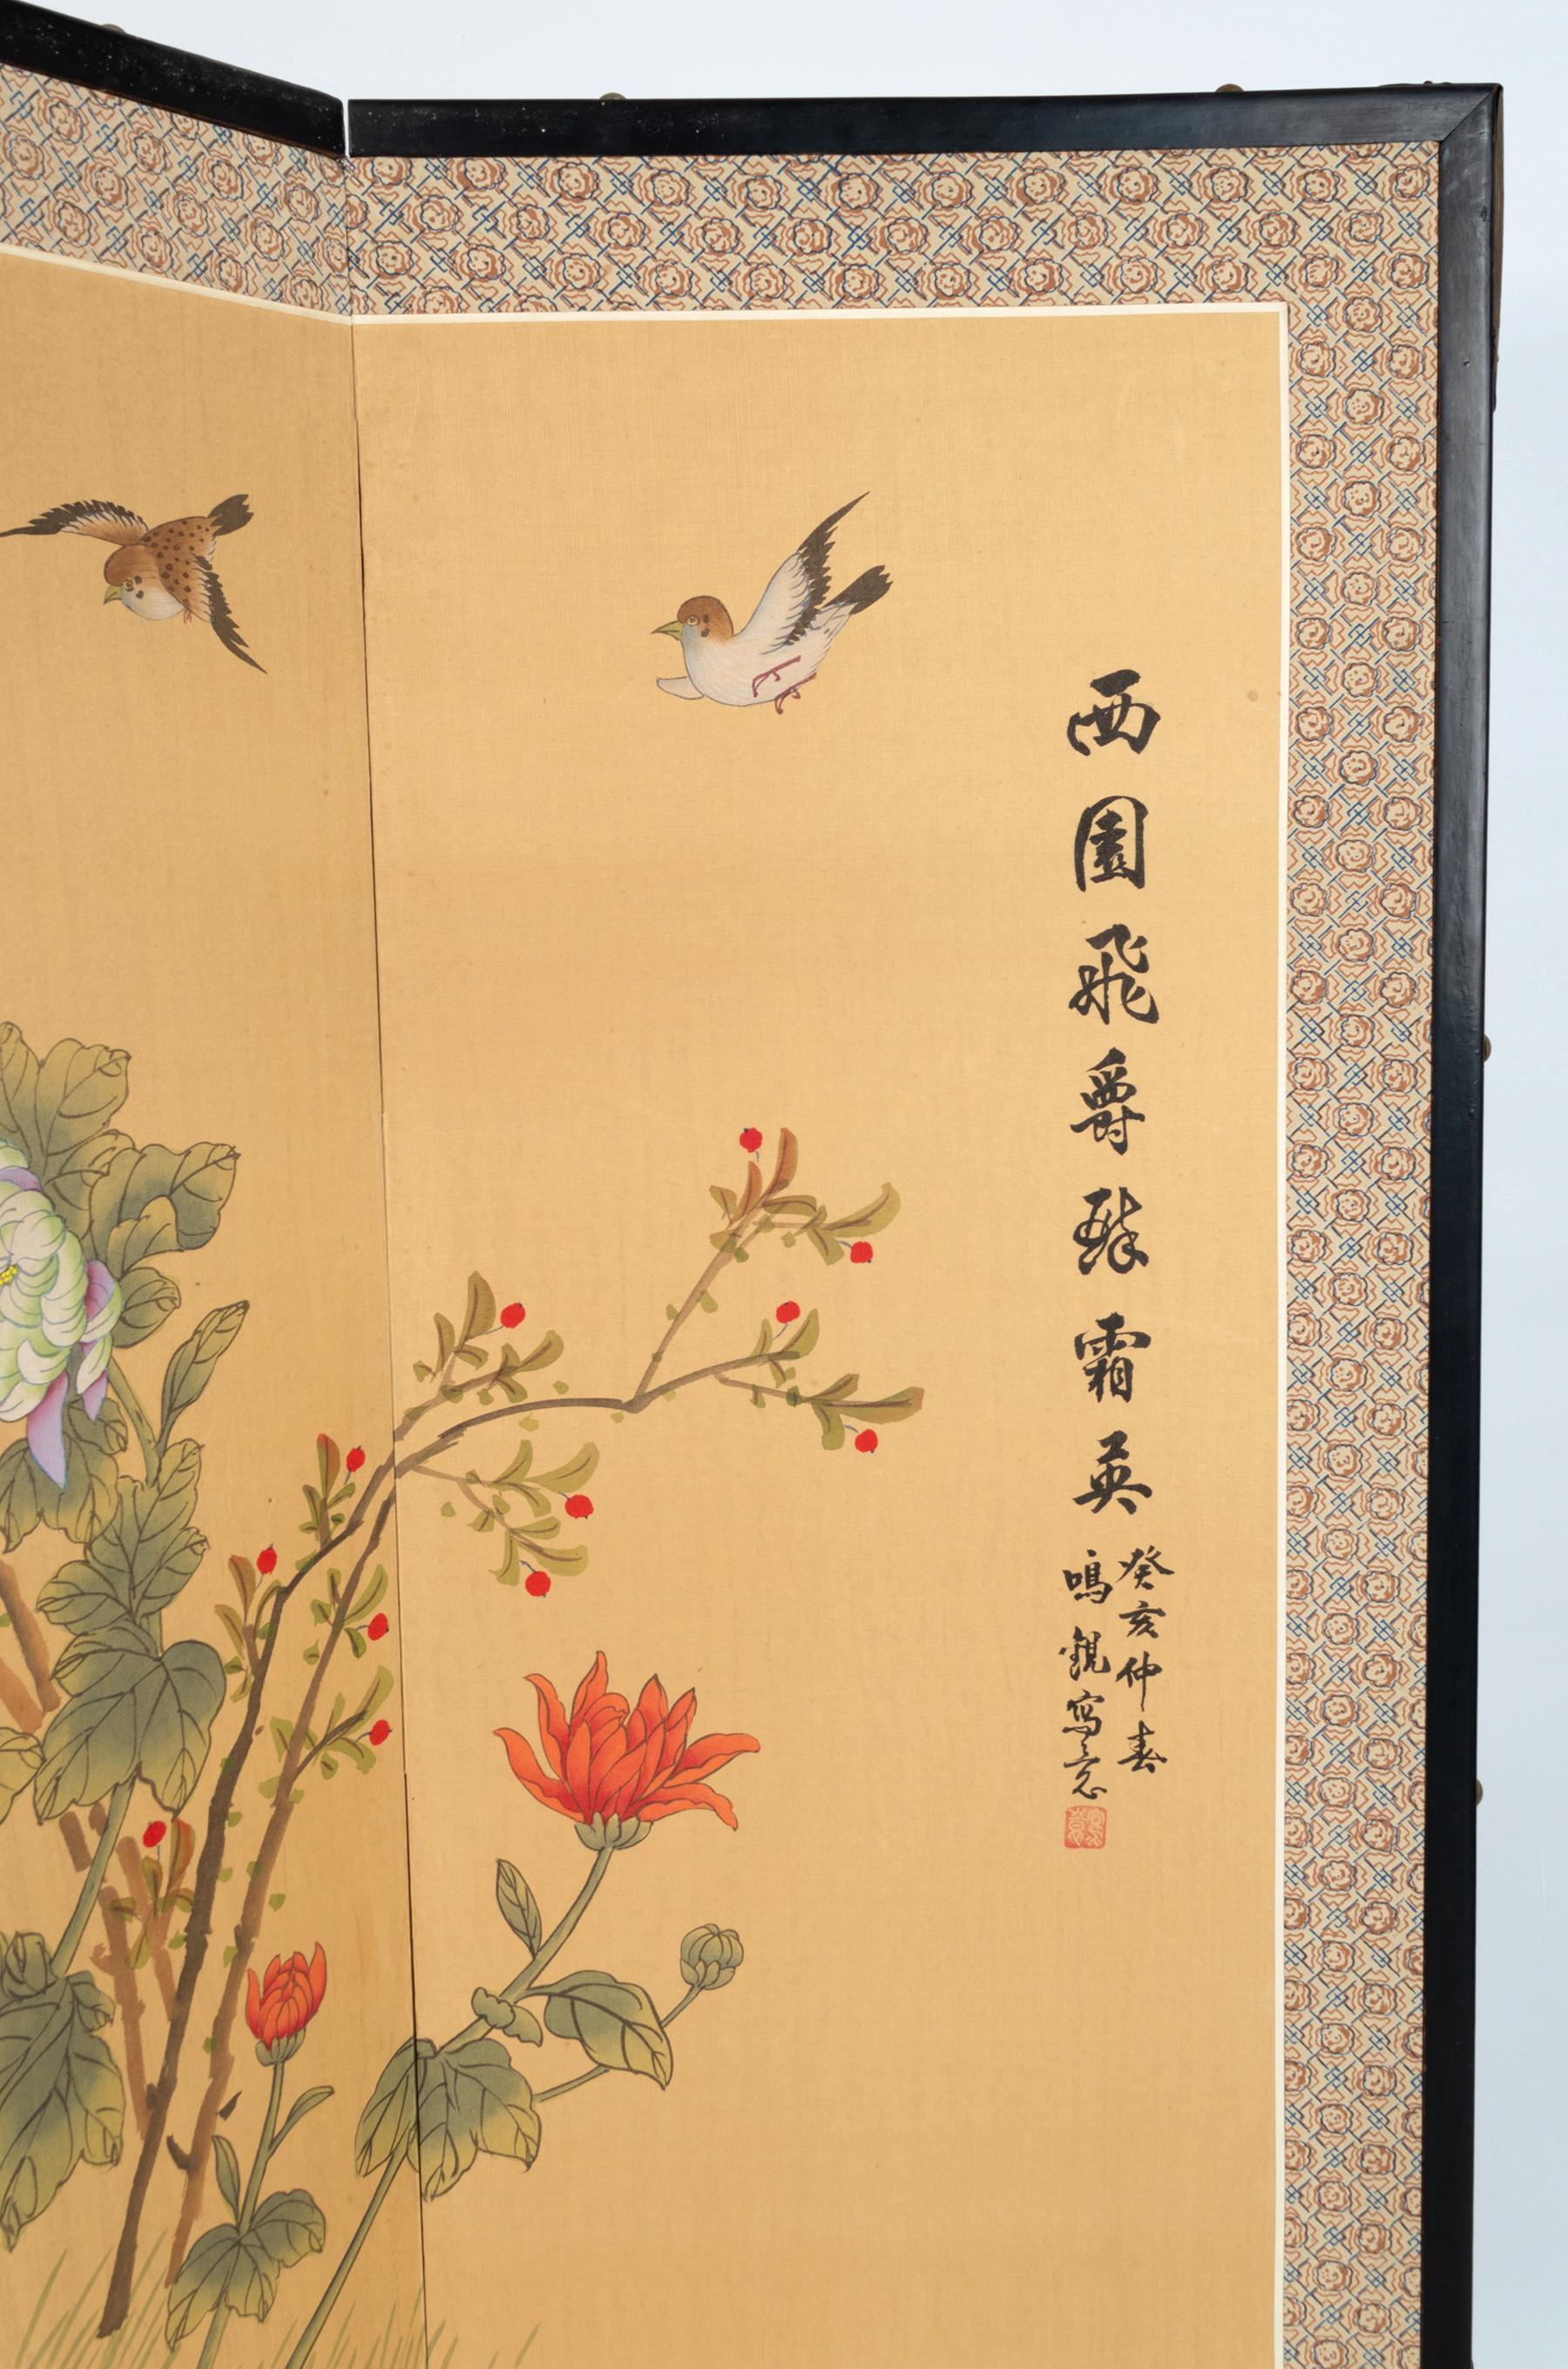 Ein vierteiliger japanischer Byobu-Faltwandschirm, der eine Blumenszene mit Vögeln darstellt. 
Japan, ca. 1950 Showa-Periode
Ein attraktives Exemplar mit schönen handgemalten Details.
Gemalt im Stil der Nihonga-Schule. Vom Künstler signiert und